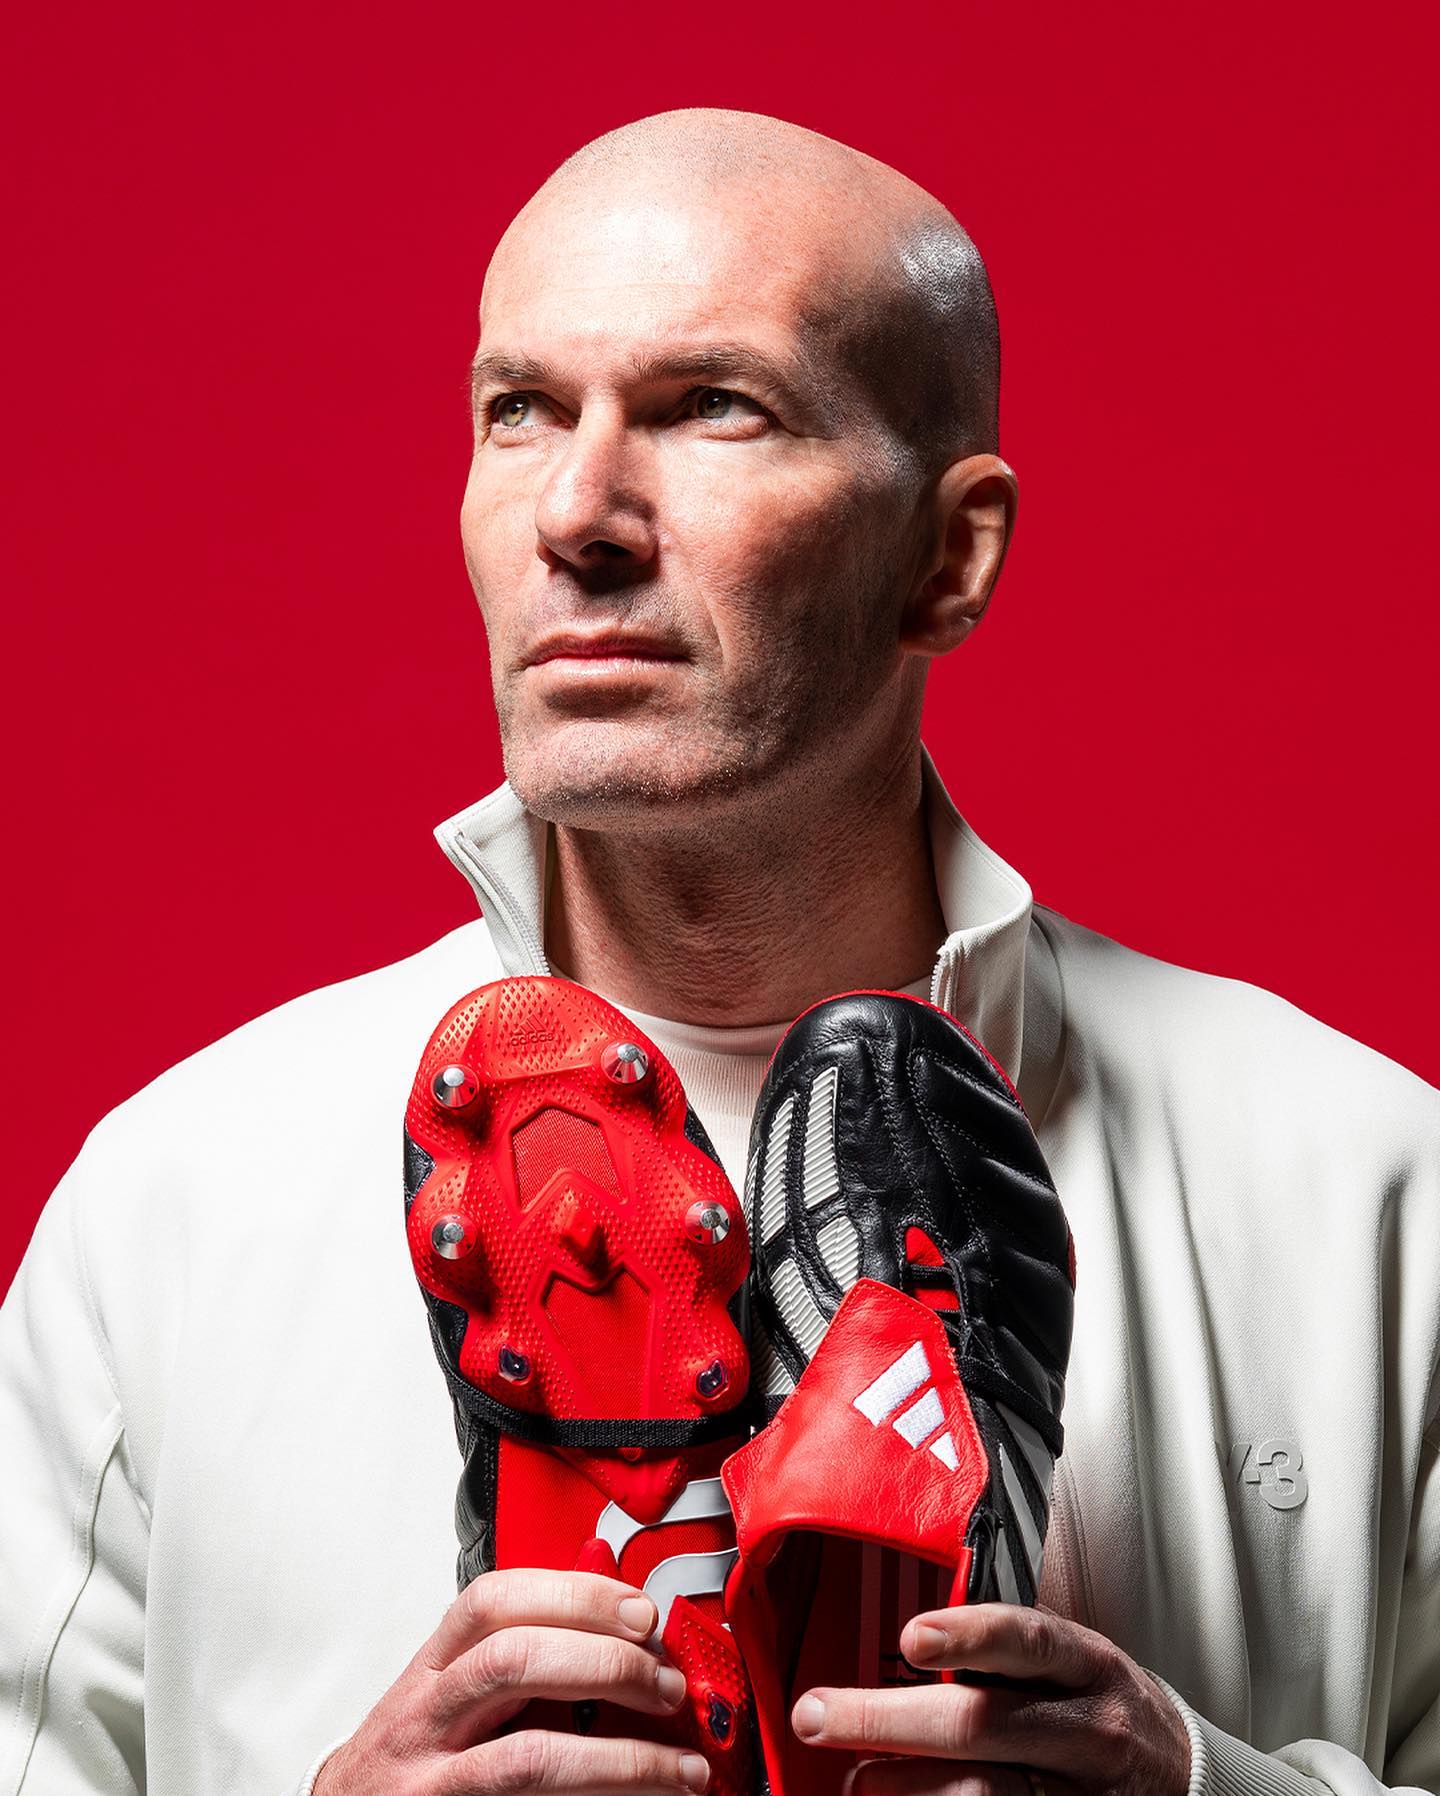 igualdad Espectáculo juego Mundo Deportivo on Twitter: "𝟮𝟬𝟬𝟮 / 𝟮𝟬𝟮𝟮 🔙 Adidas vuelve a lanzar  las míticas Predator Mania con las que Zidane marcó su gol en la final de  la Champions League hace 20